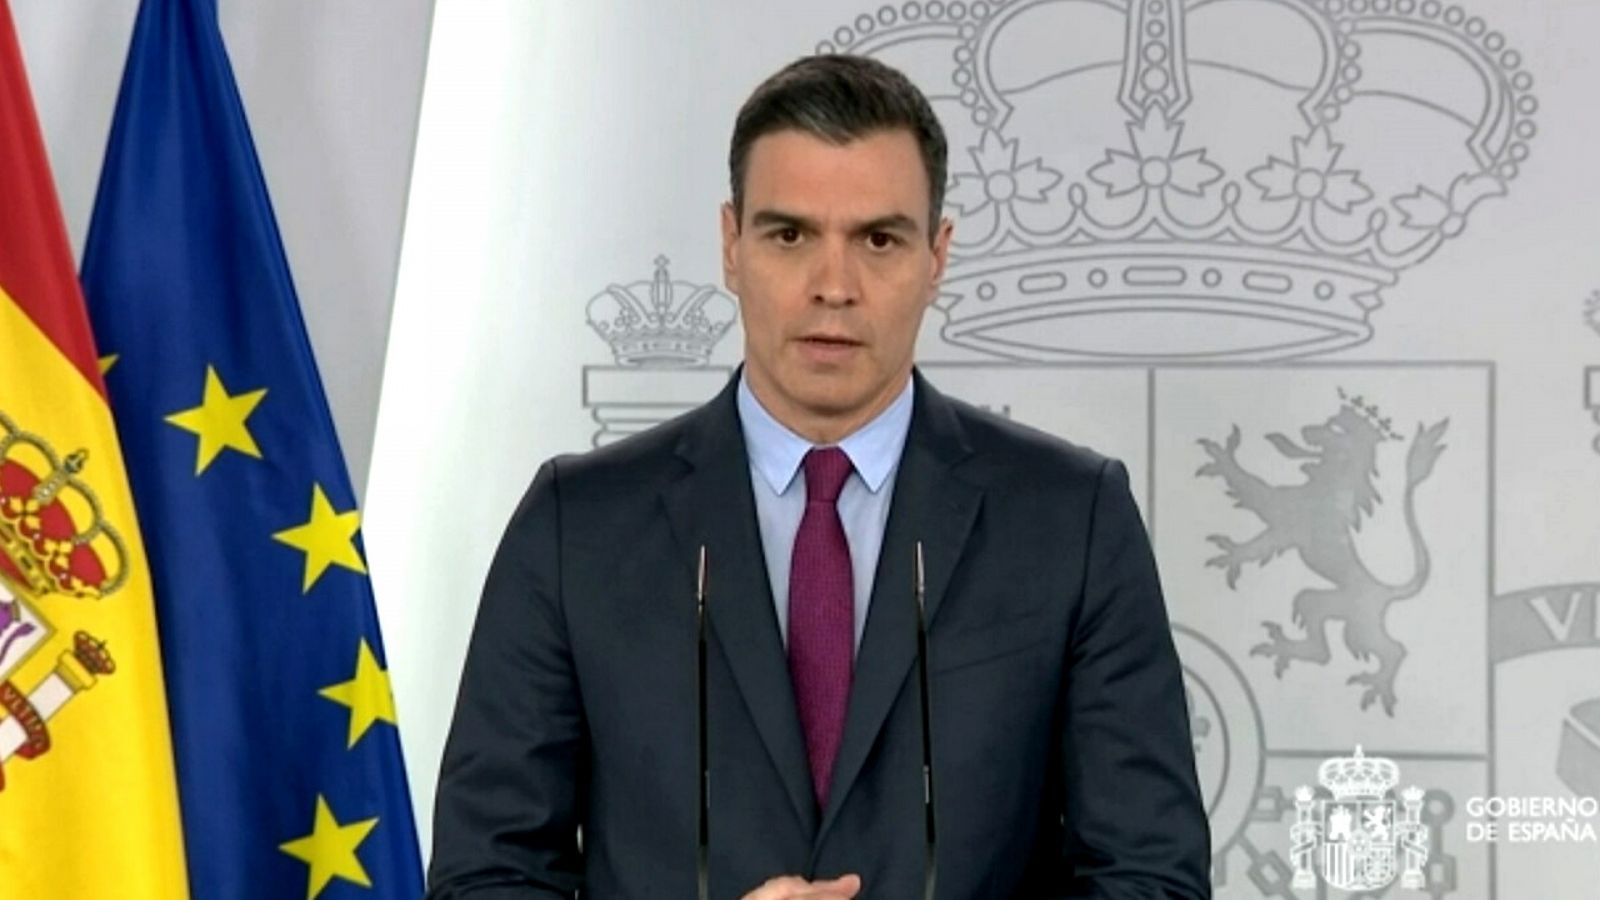 Especial informativo - Comparecencia del presidente del gobierno - 28/04/20 - RTVE.es